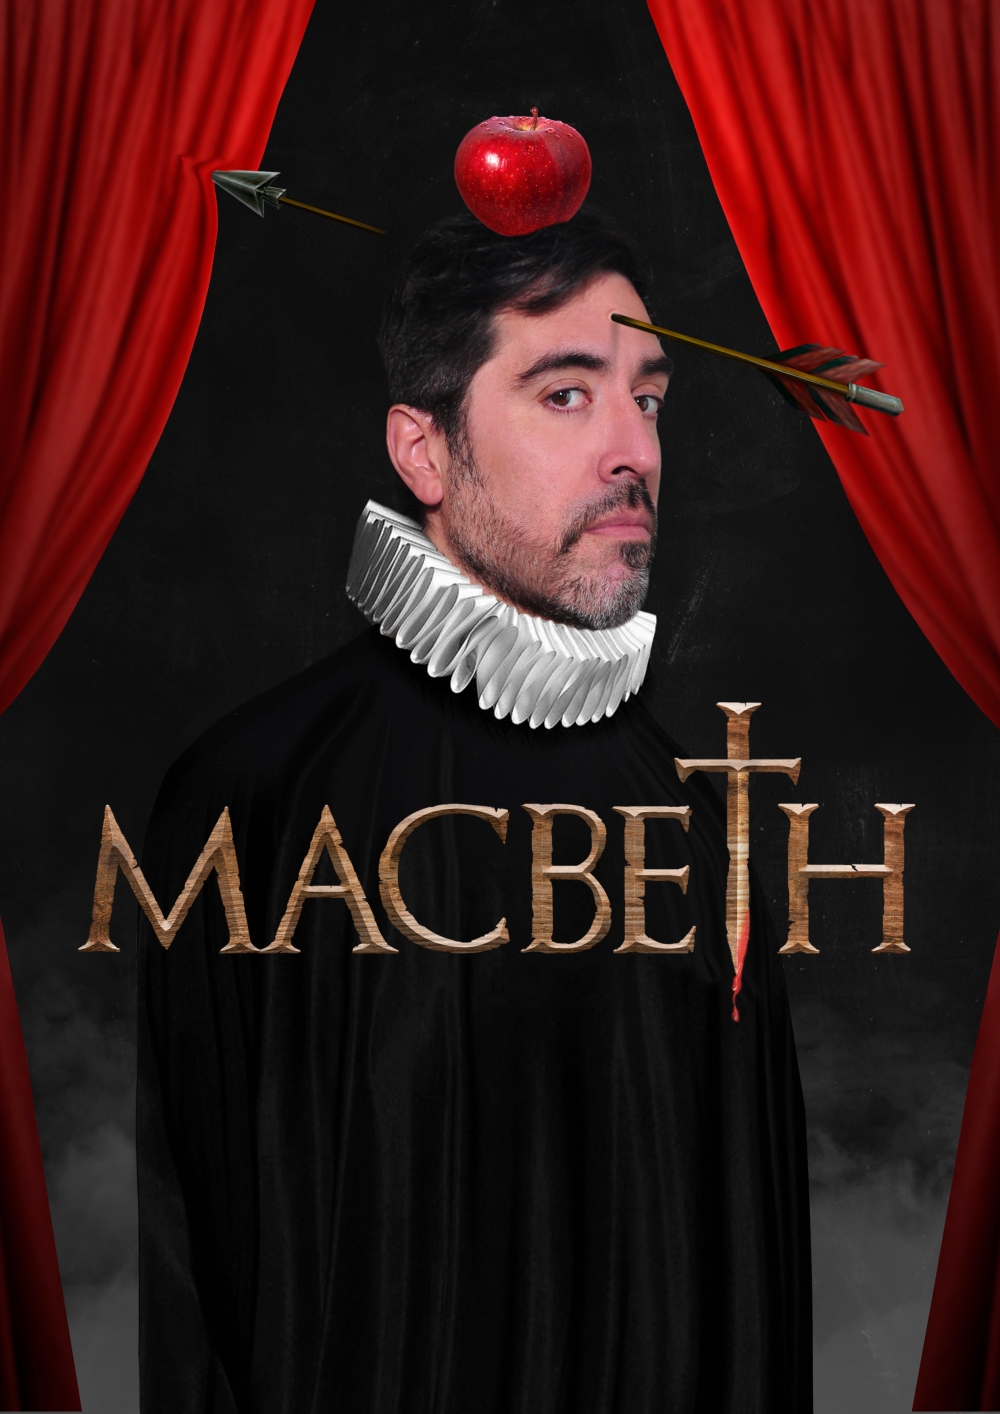 MacbethD.jpg